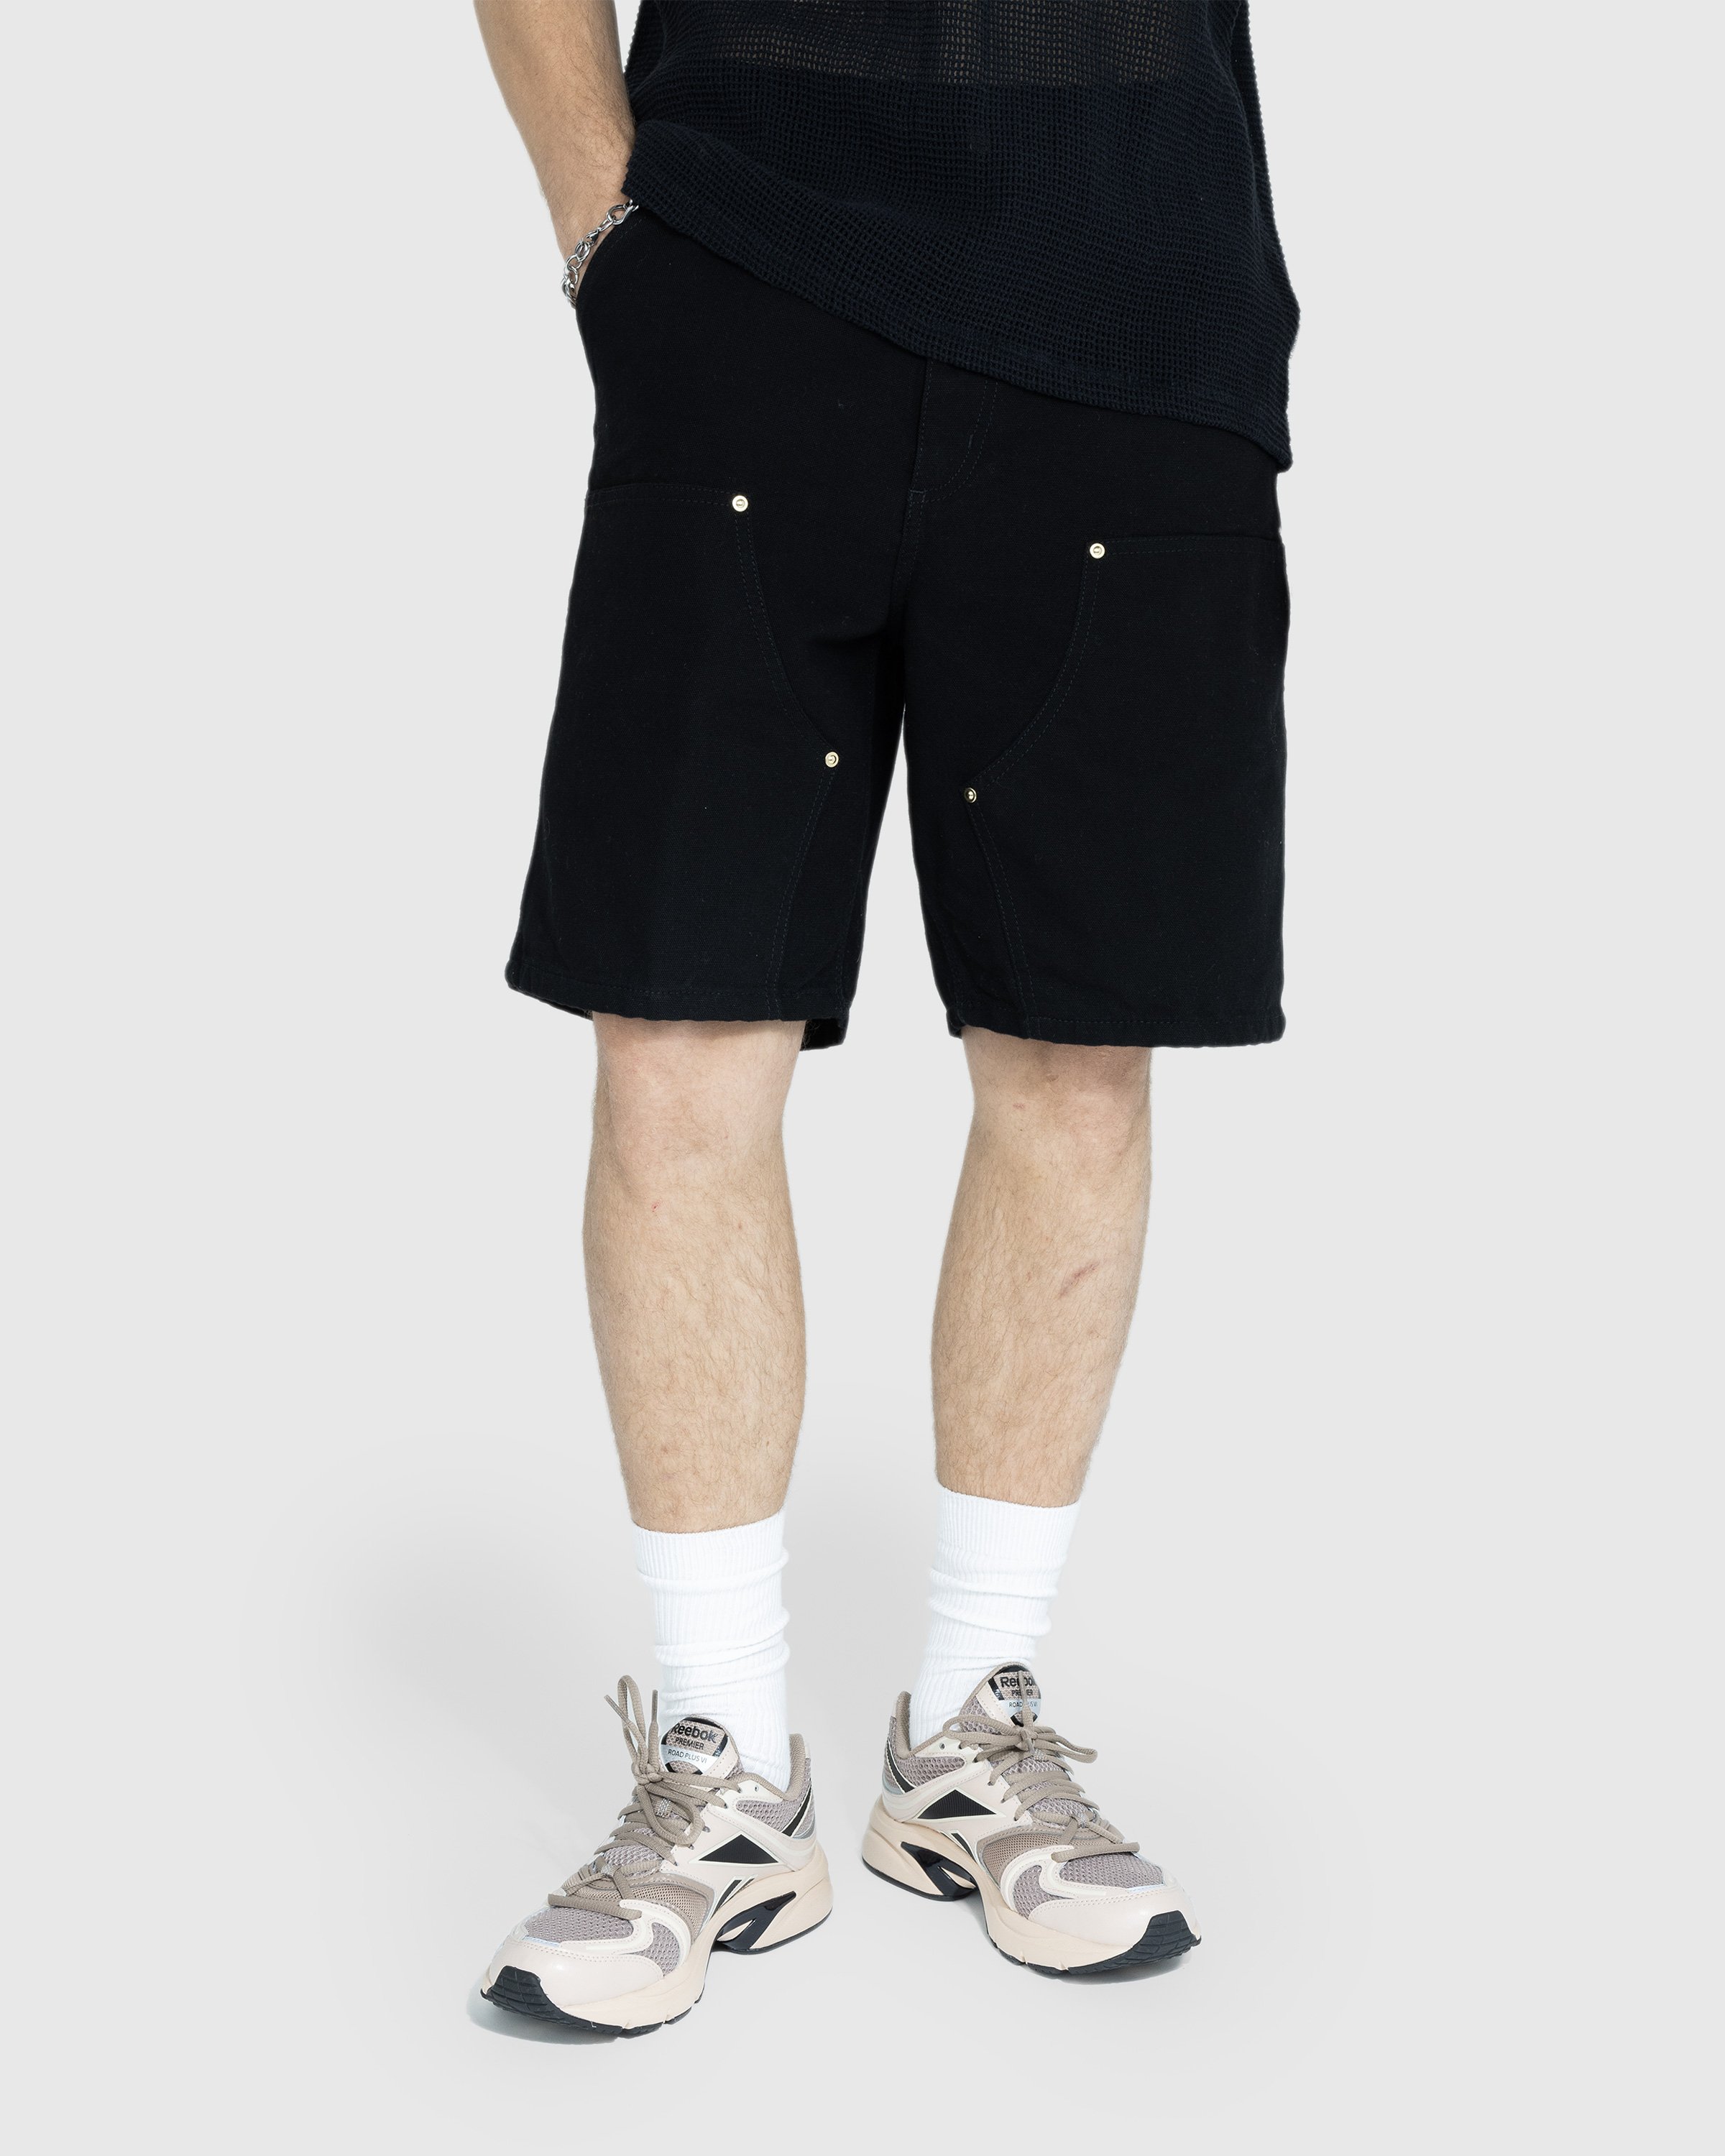 Carhartt WIP - Double Knee Short Rinsed Black - Clothing - Black - Image 2